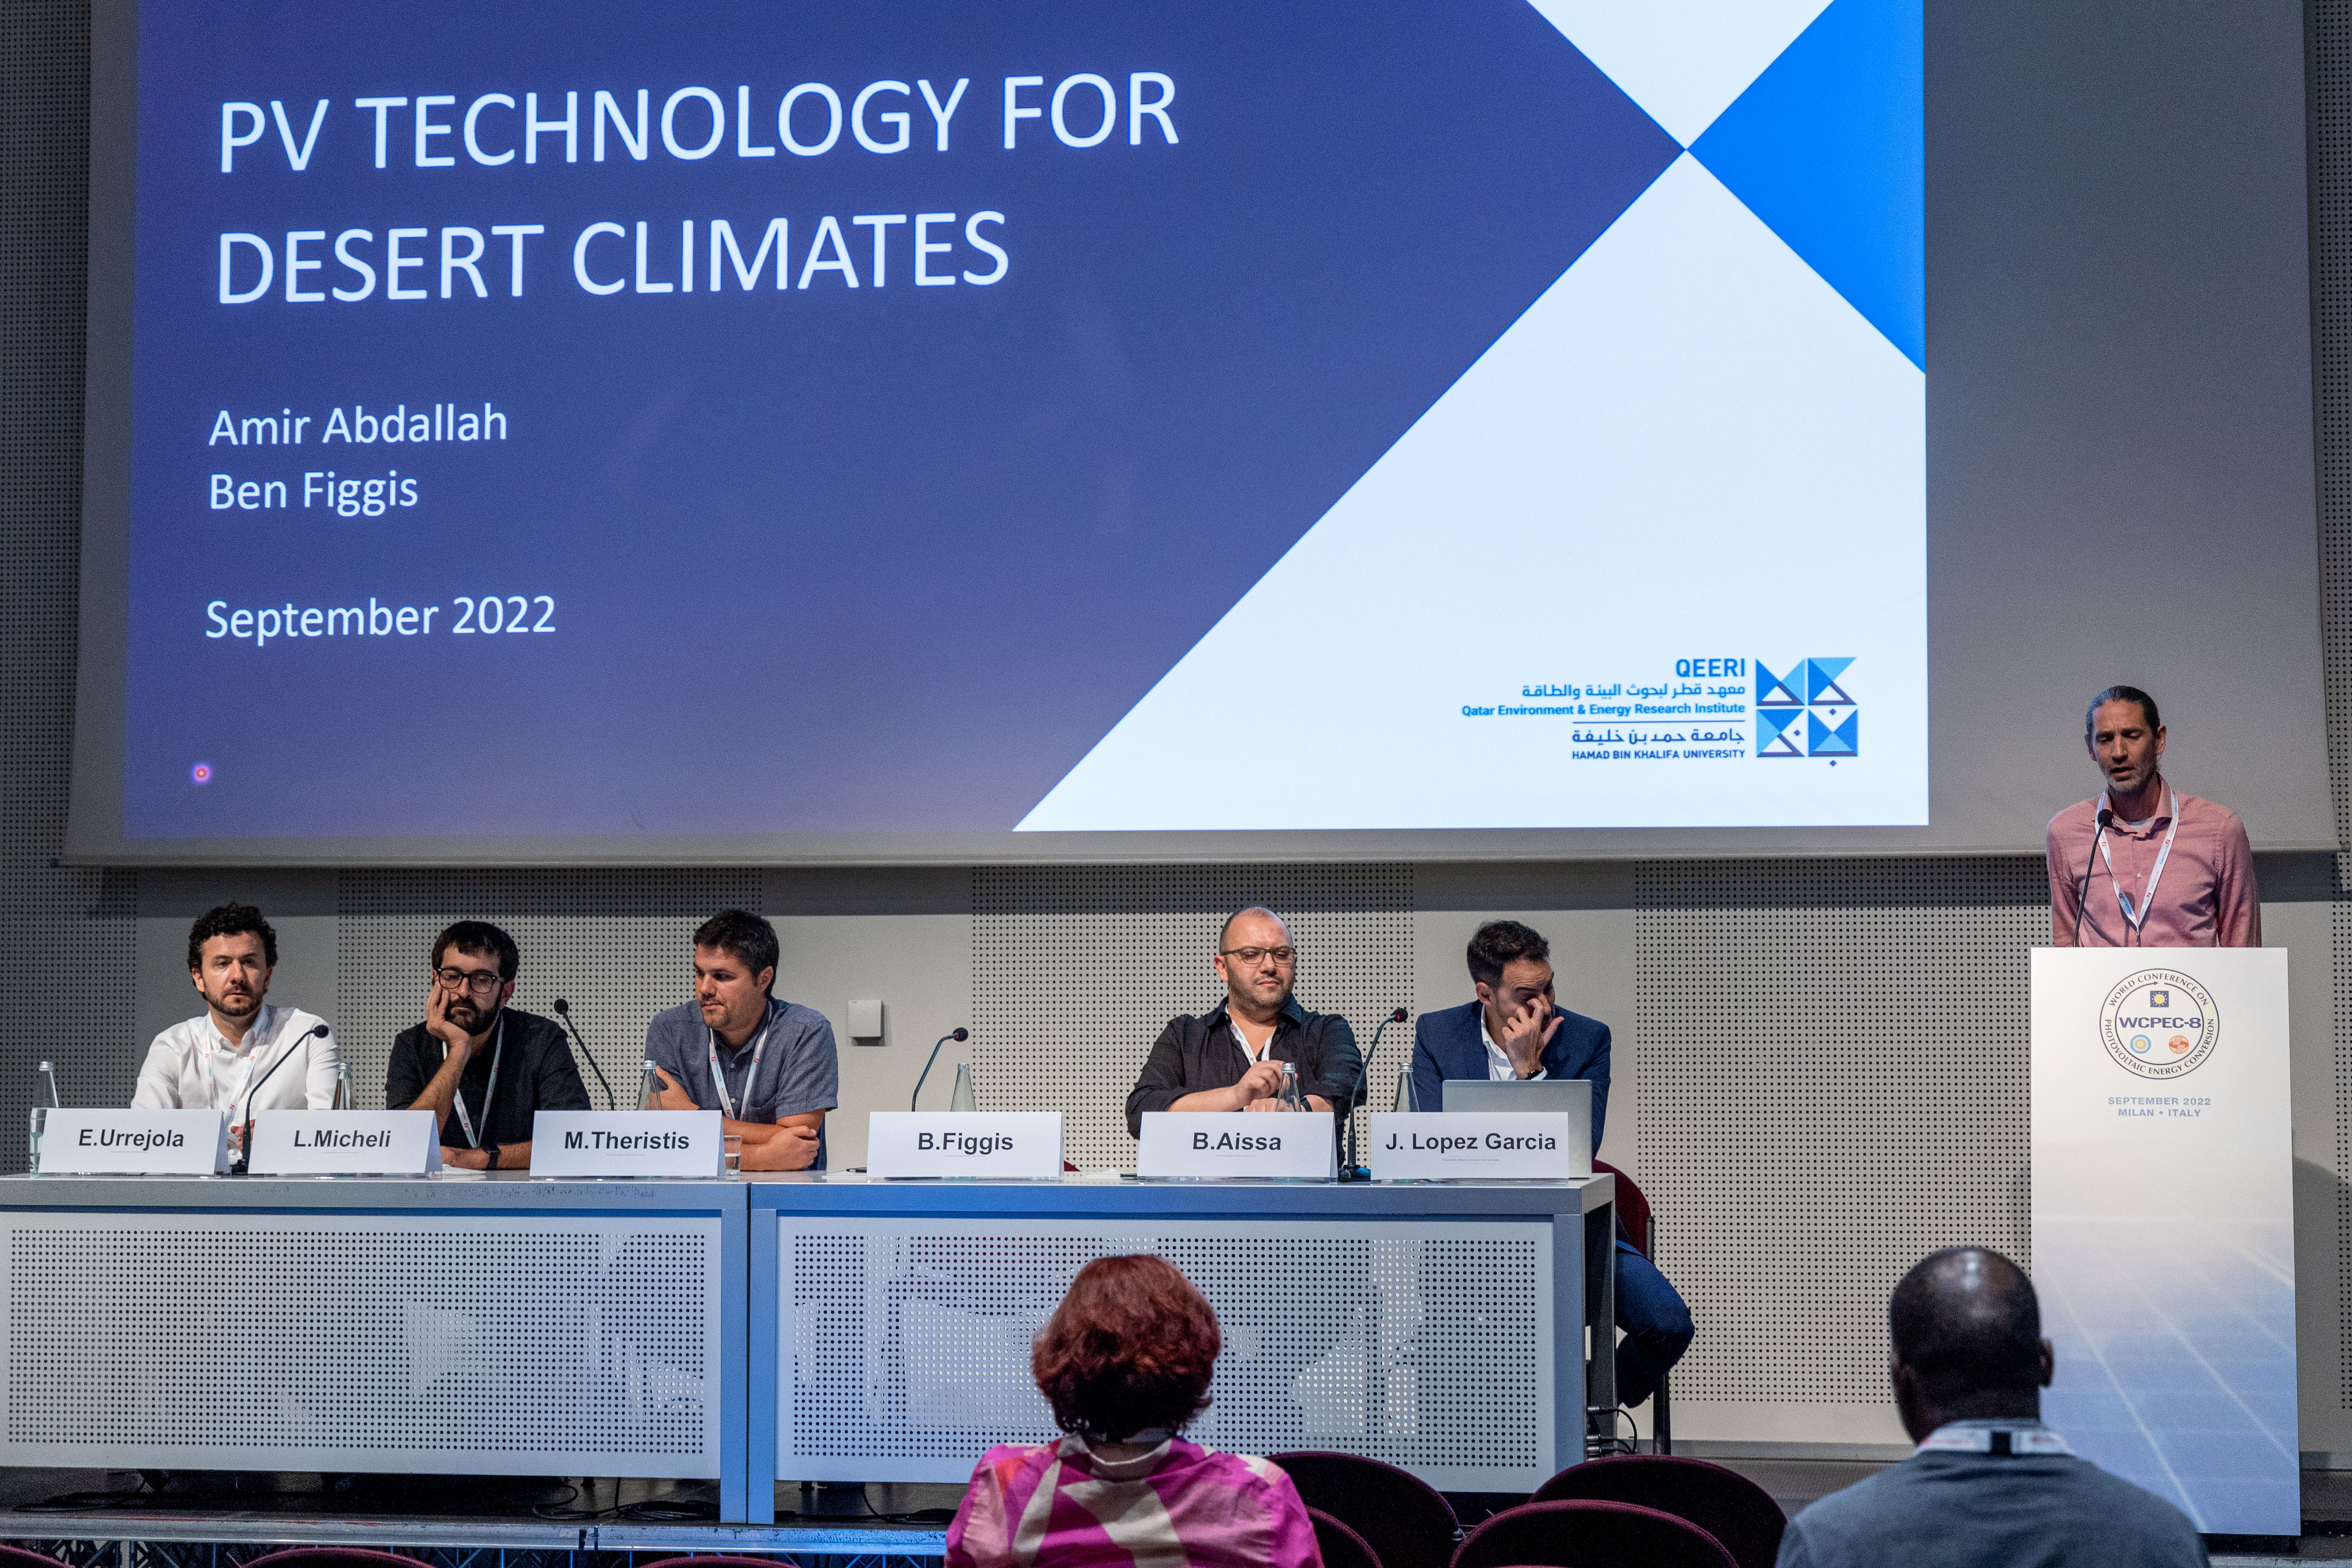 انعقد المؤتمر في مدينة ميلان بإيطاليا (2) احتشاد الجماهير عند منصة معهد قطر لبحوث البيئة والطاقة (3) نظرة خاصة على مشاركة معهد قطر لبحوث البيئة والطاقة في إيطاليا، (4) الدكتور مارك فيرميرش متحدثًا في المؤتمر